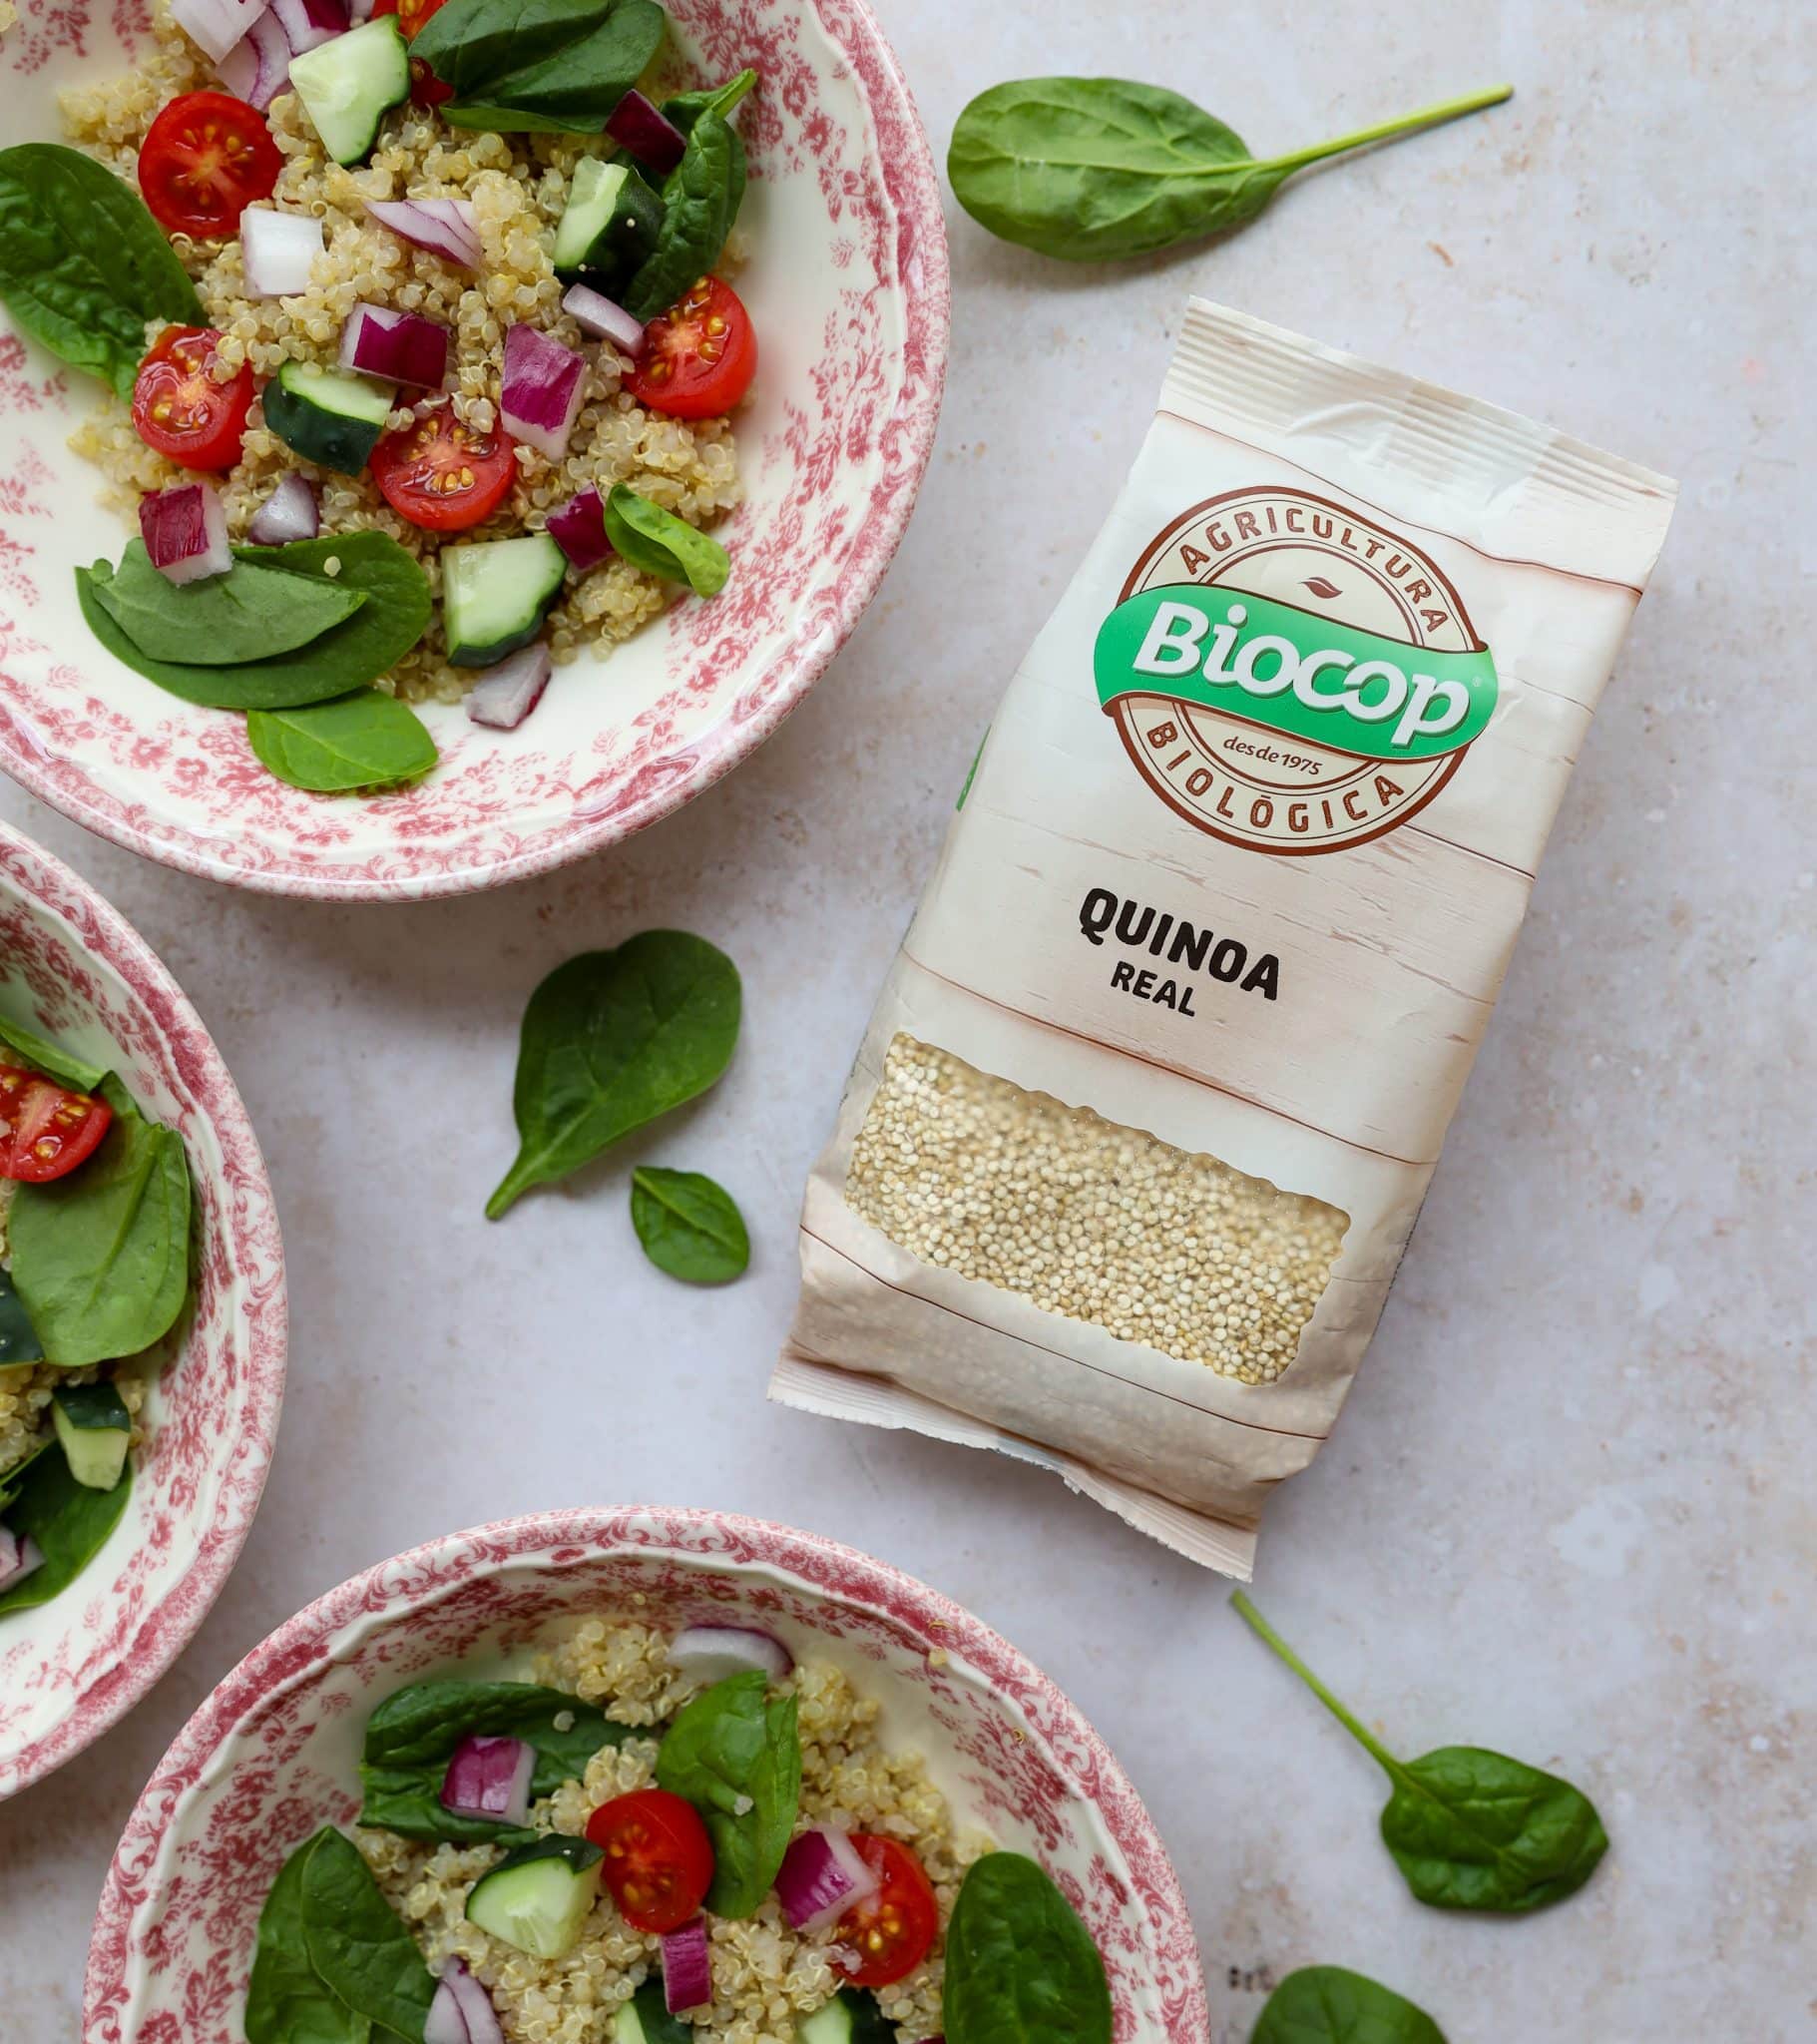 Quinoa real Biocop